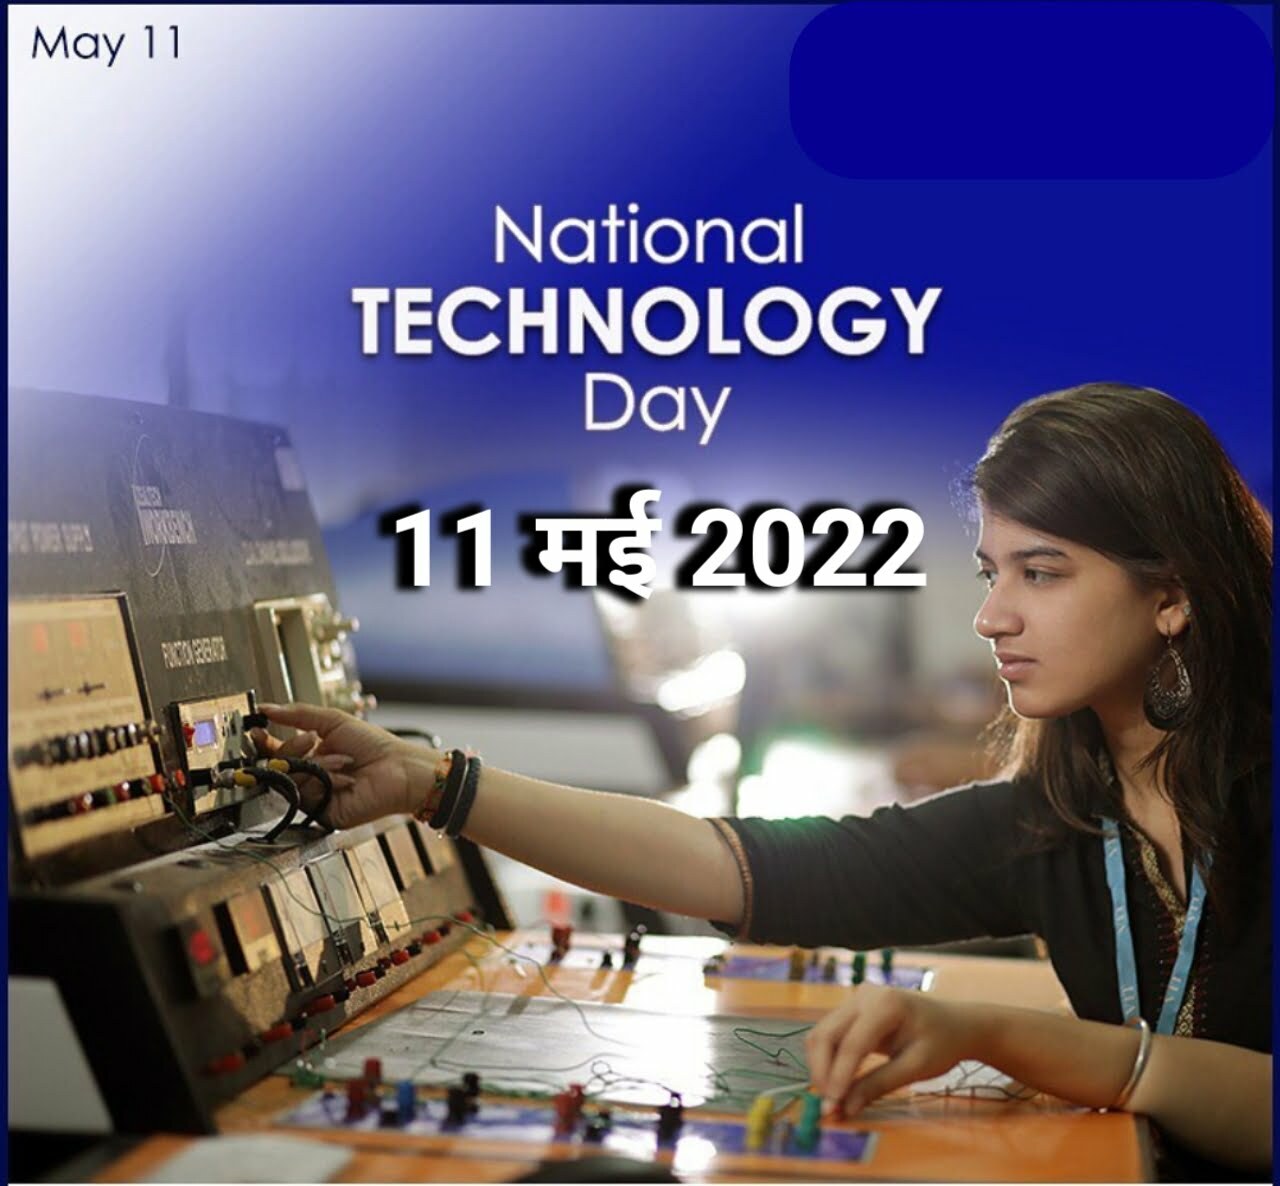 National Technology Day 2022 Theme in Hindi - आज ही के दिन भारत में पहली बार परमाणु परीक्षण, जानिए आज के दिन का इतिहास और महत्व